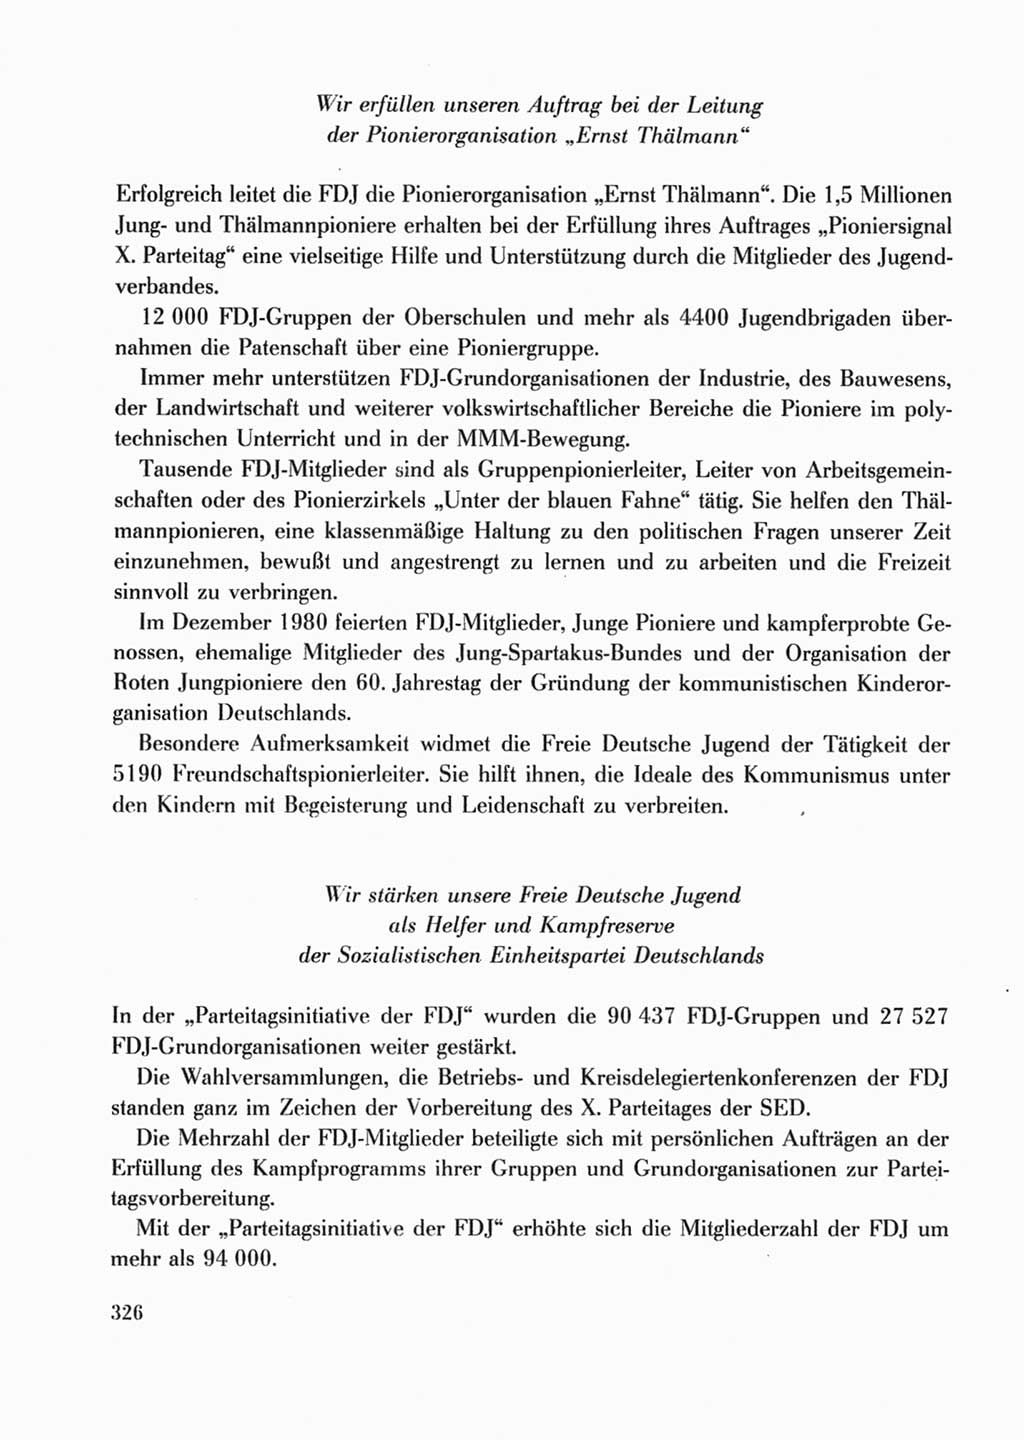 Protokoll der Verhandlungen des Ⅹ. Parteitages der Sozialistischen Einheitspartei Deutschlands (SED) [Deutsche Demokratische Republik (DDR)] 1981, Band 2, Seite 326 (Prot. Verh. Ⅹ. PT SED DDR 1981, Bd. 2, S. 326)